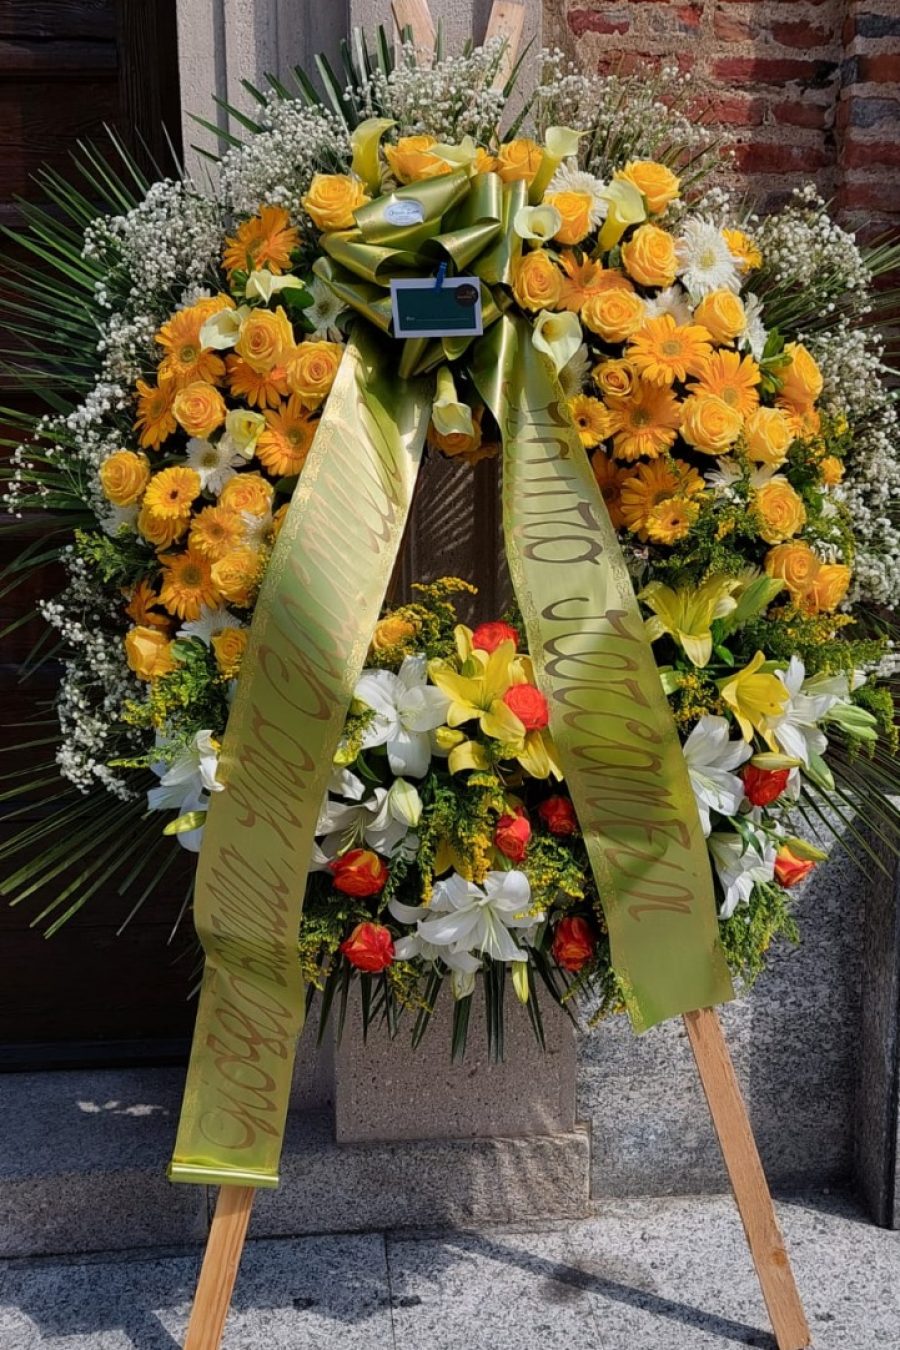 Corona di Fiori Composizione floreale funebre ,fiori, albini e beretta onoranze funebri abbiategrasso milano